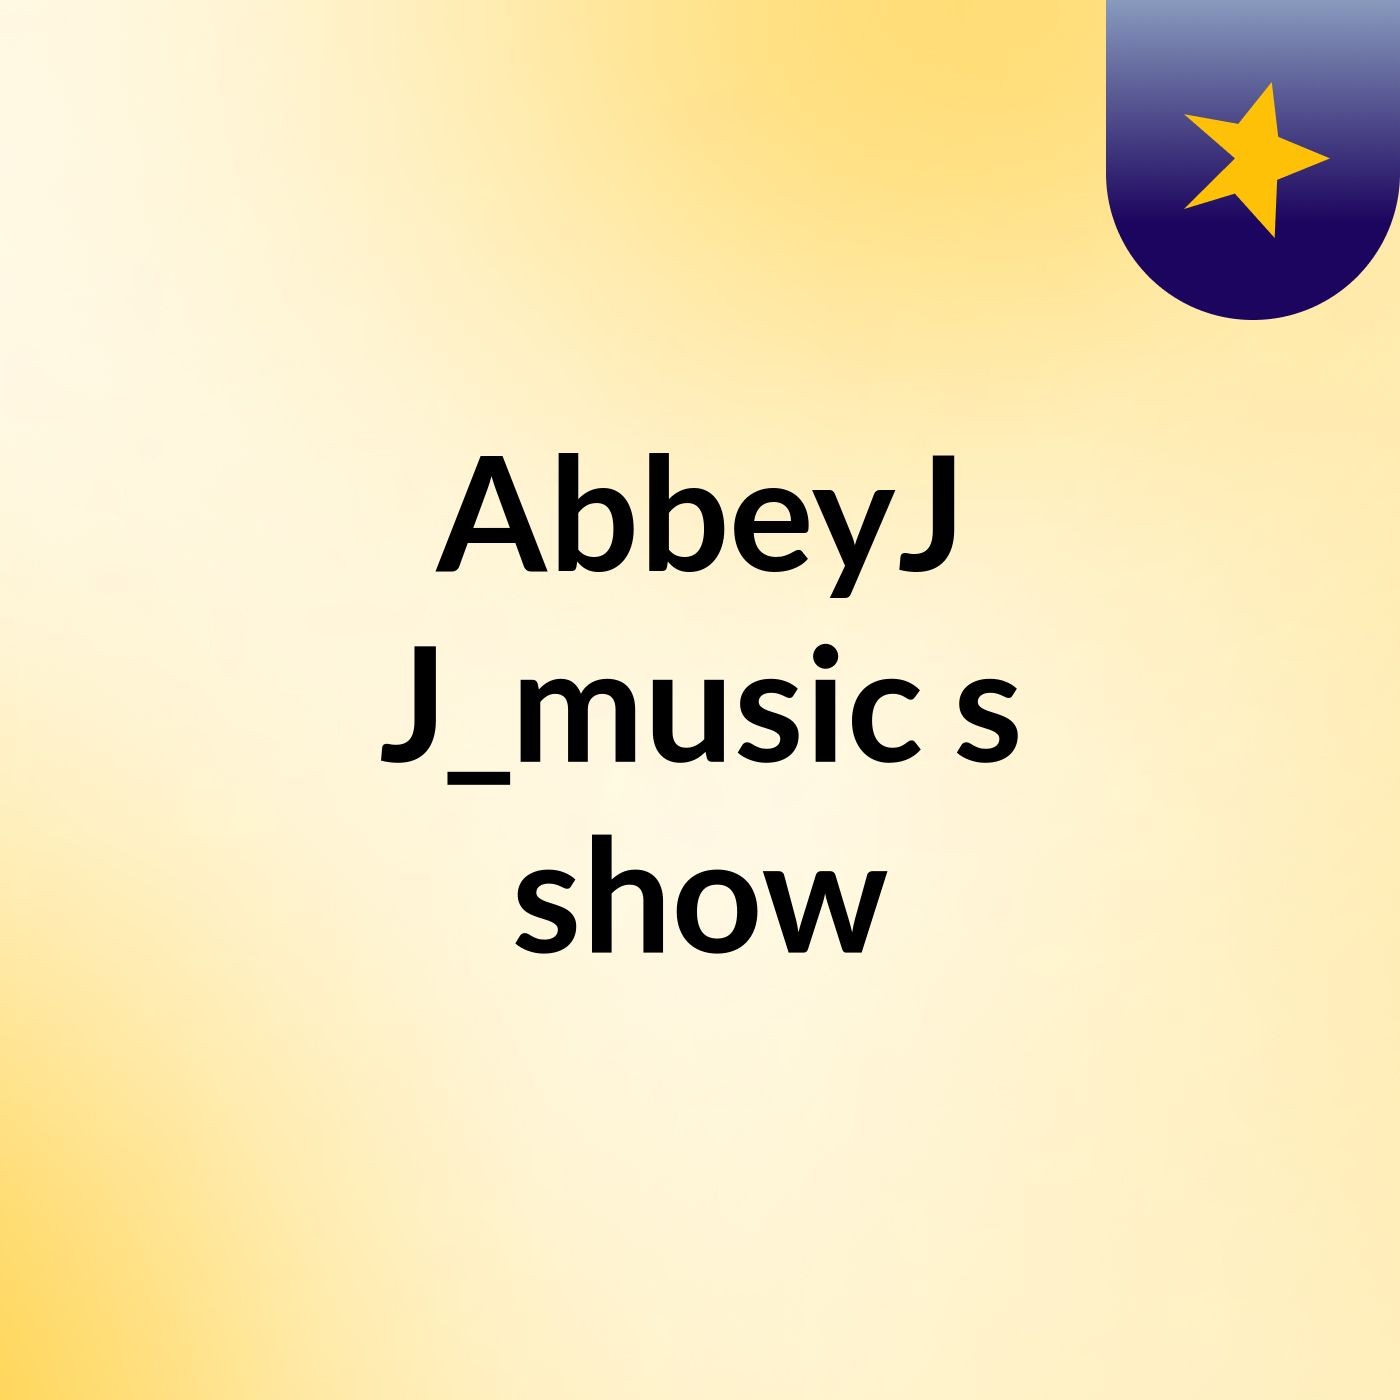 AbbeyJ J_music's show